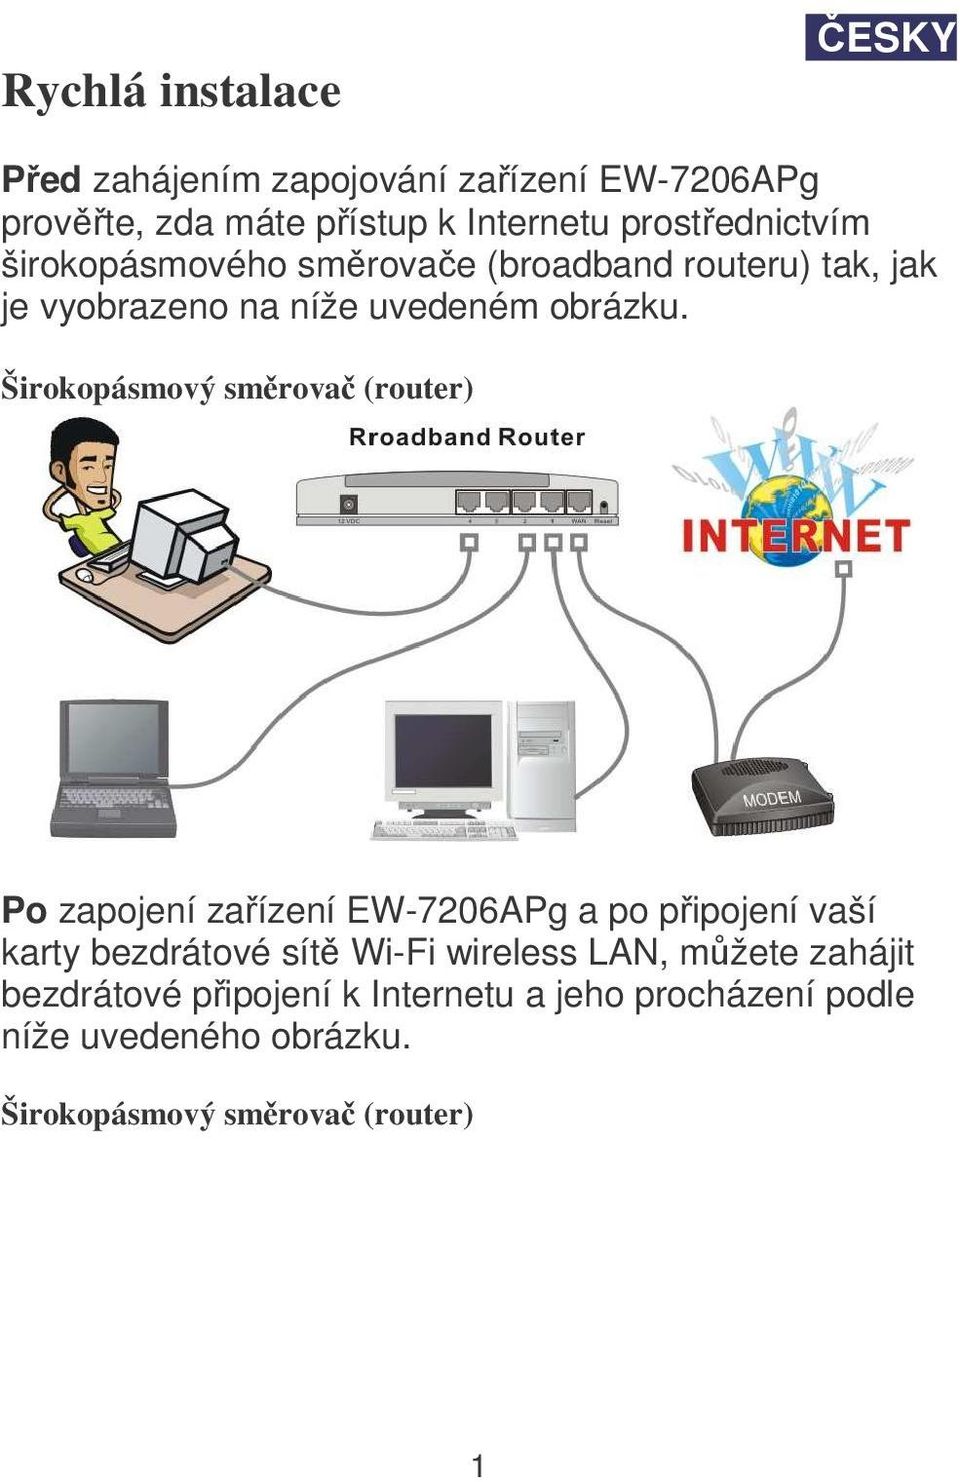 Širokopásmový smrova (router) Po zapojení zaízení EW-7206APg a po pipojení vaší karty bezdrátové sít Wi-Fi